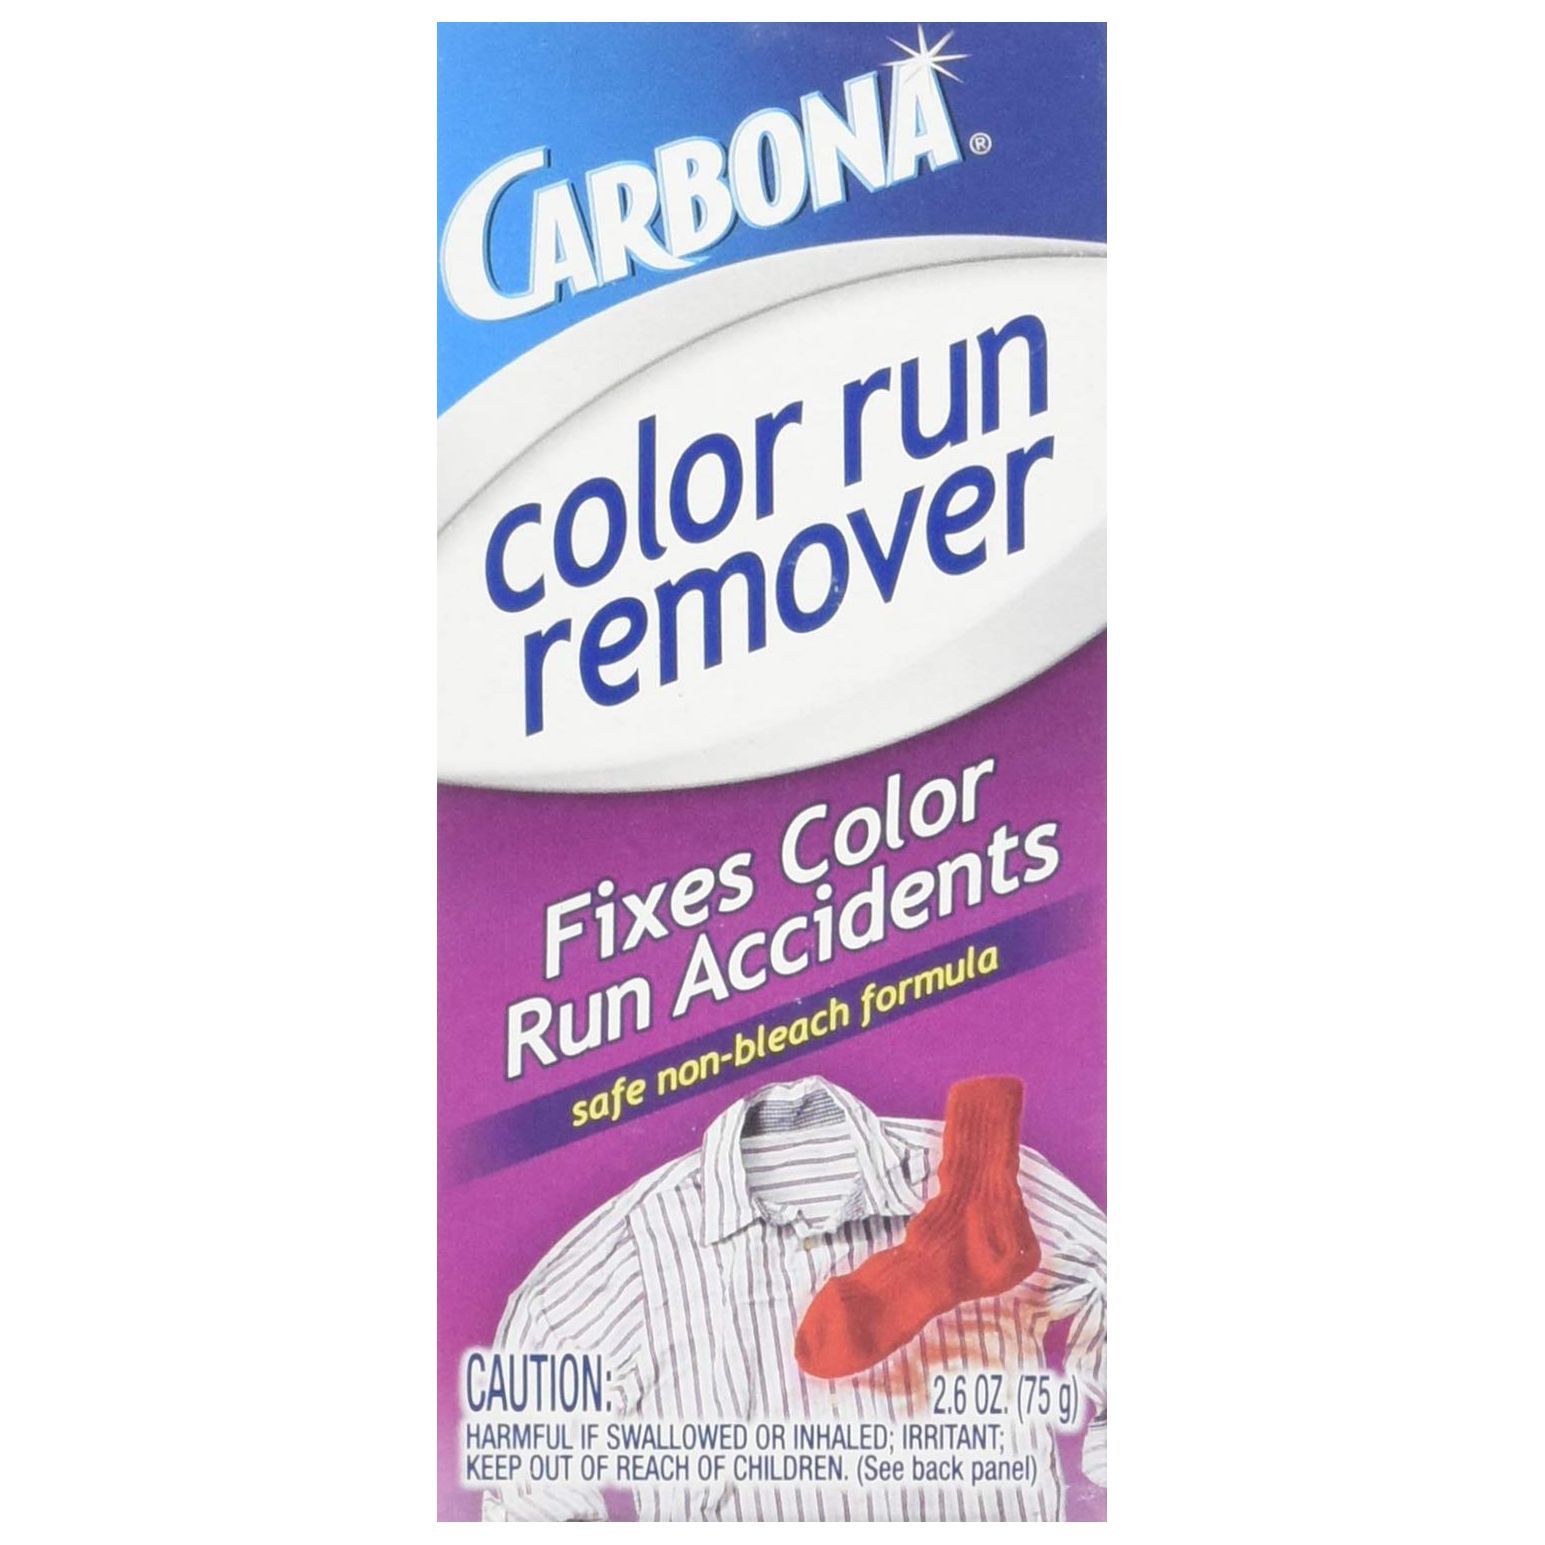 Carbona Color Run Color Remover